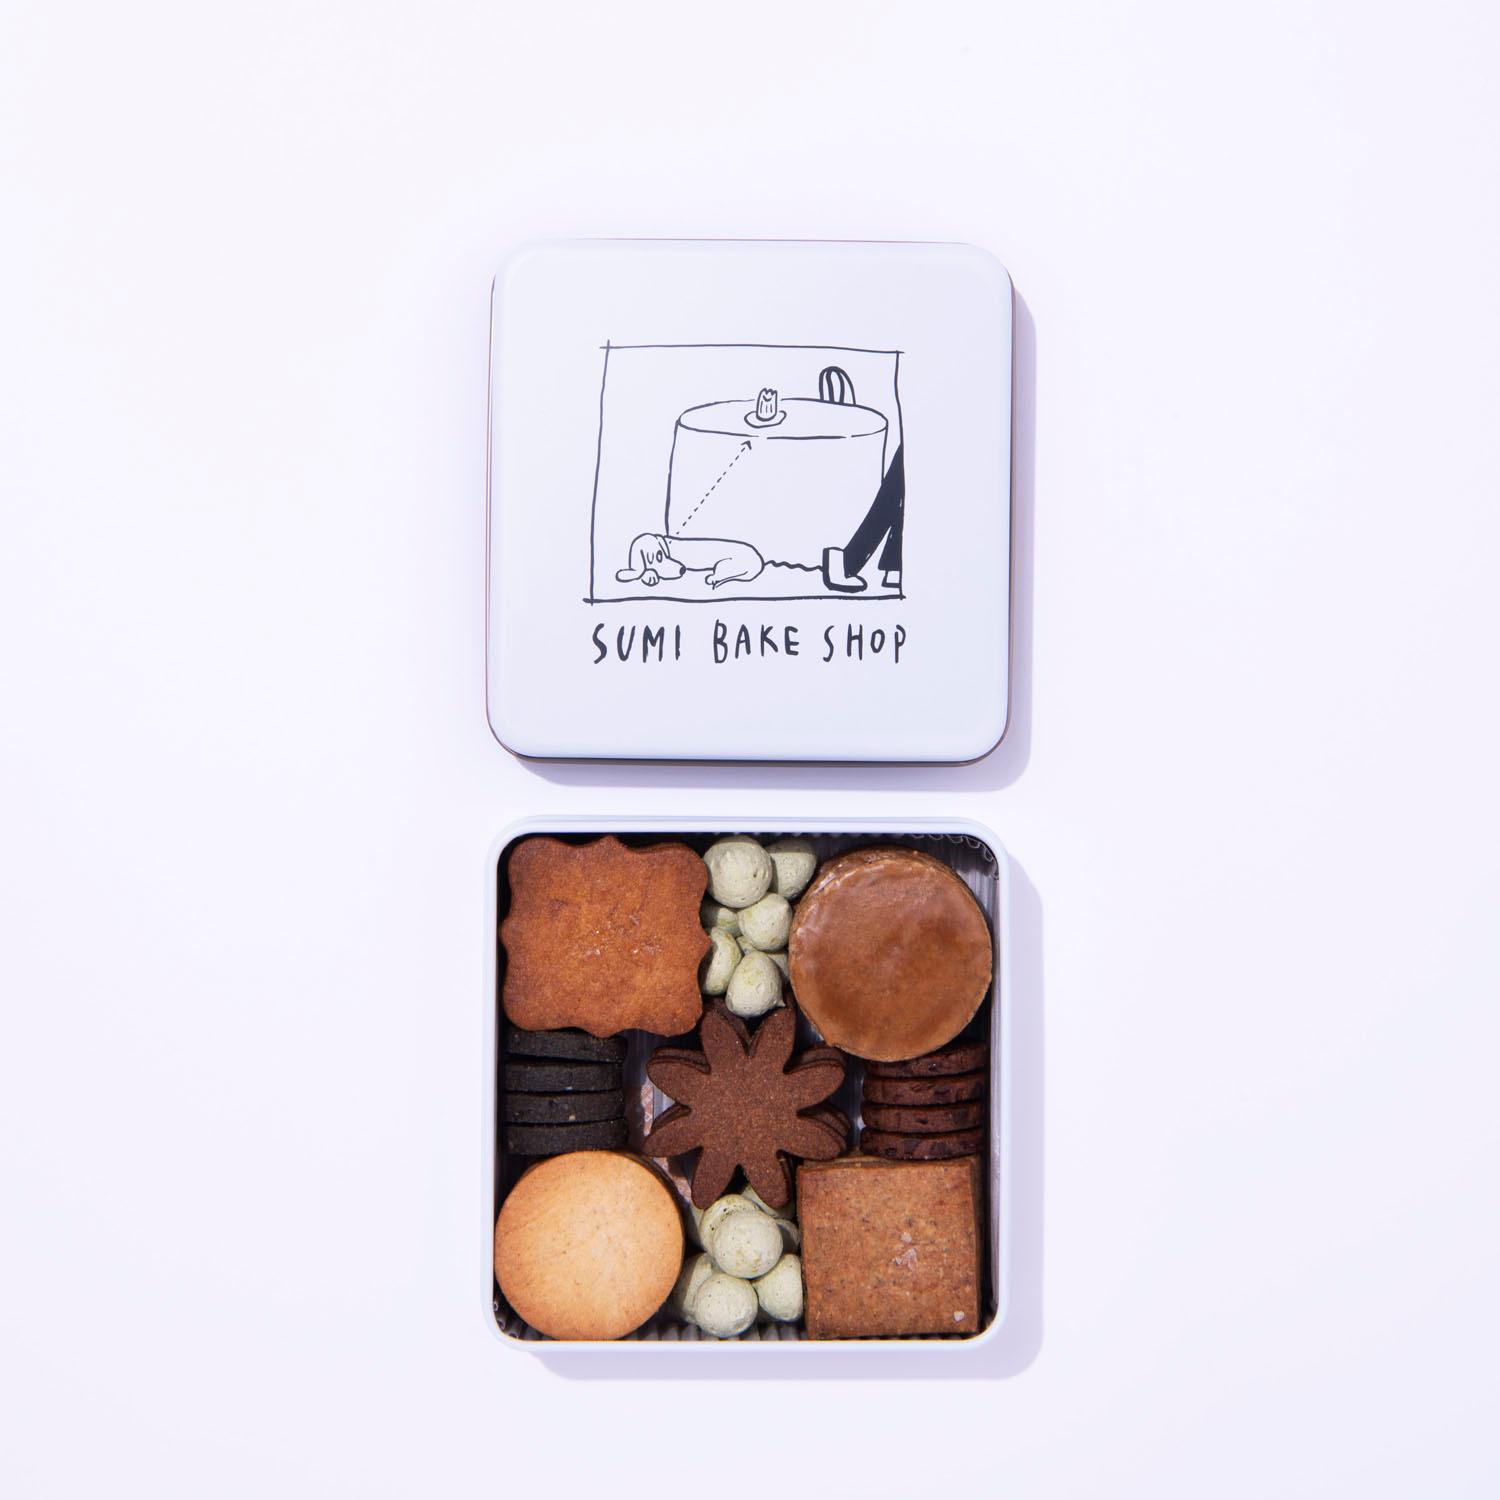 美しい箱の菓子8選【冬ギフト100】 - Slide:10